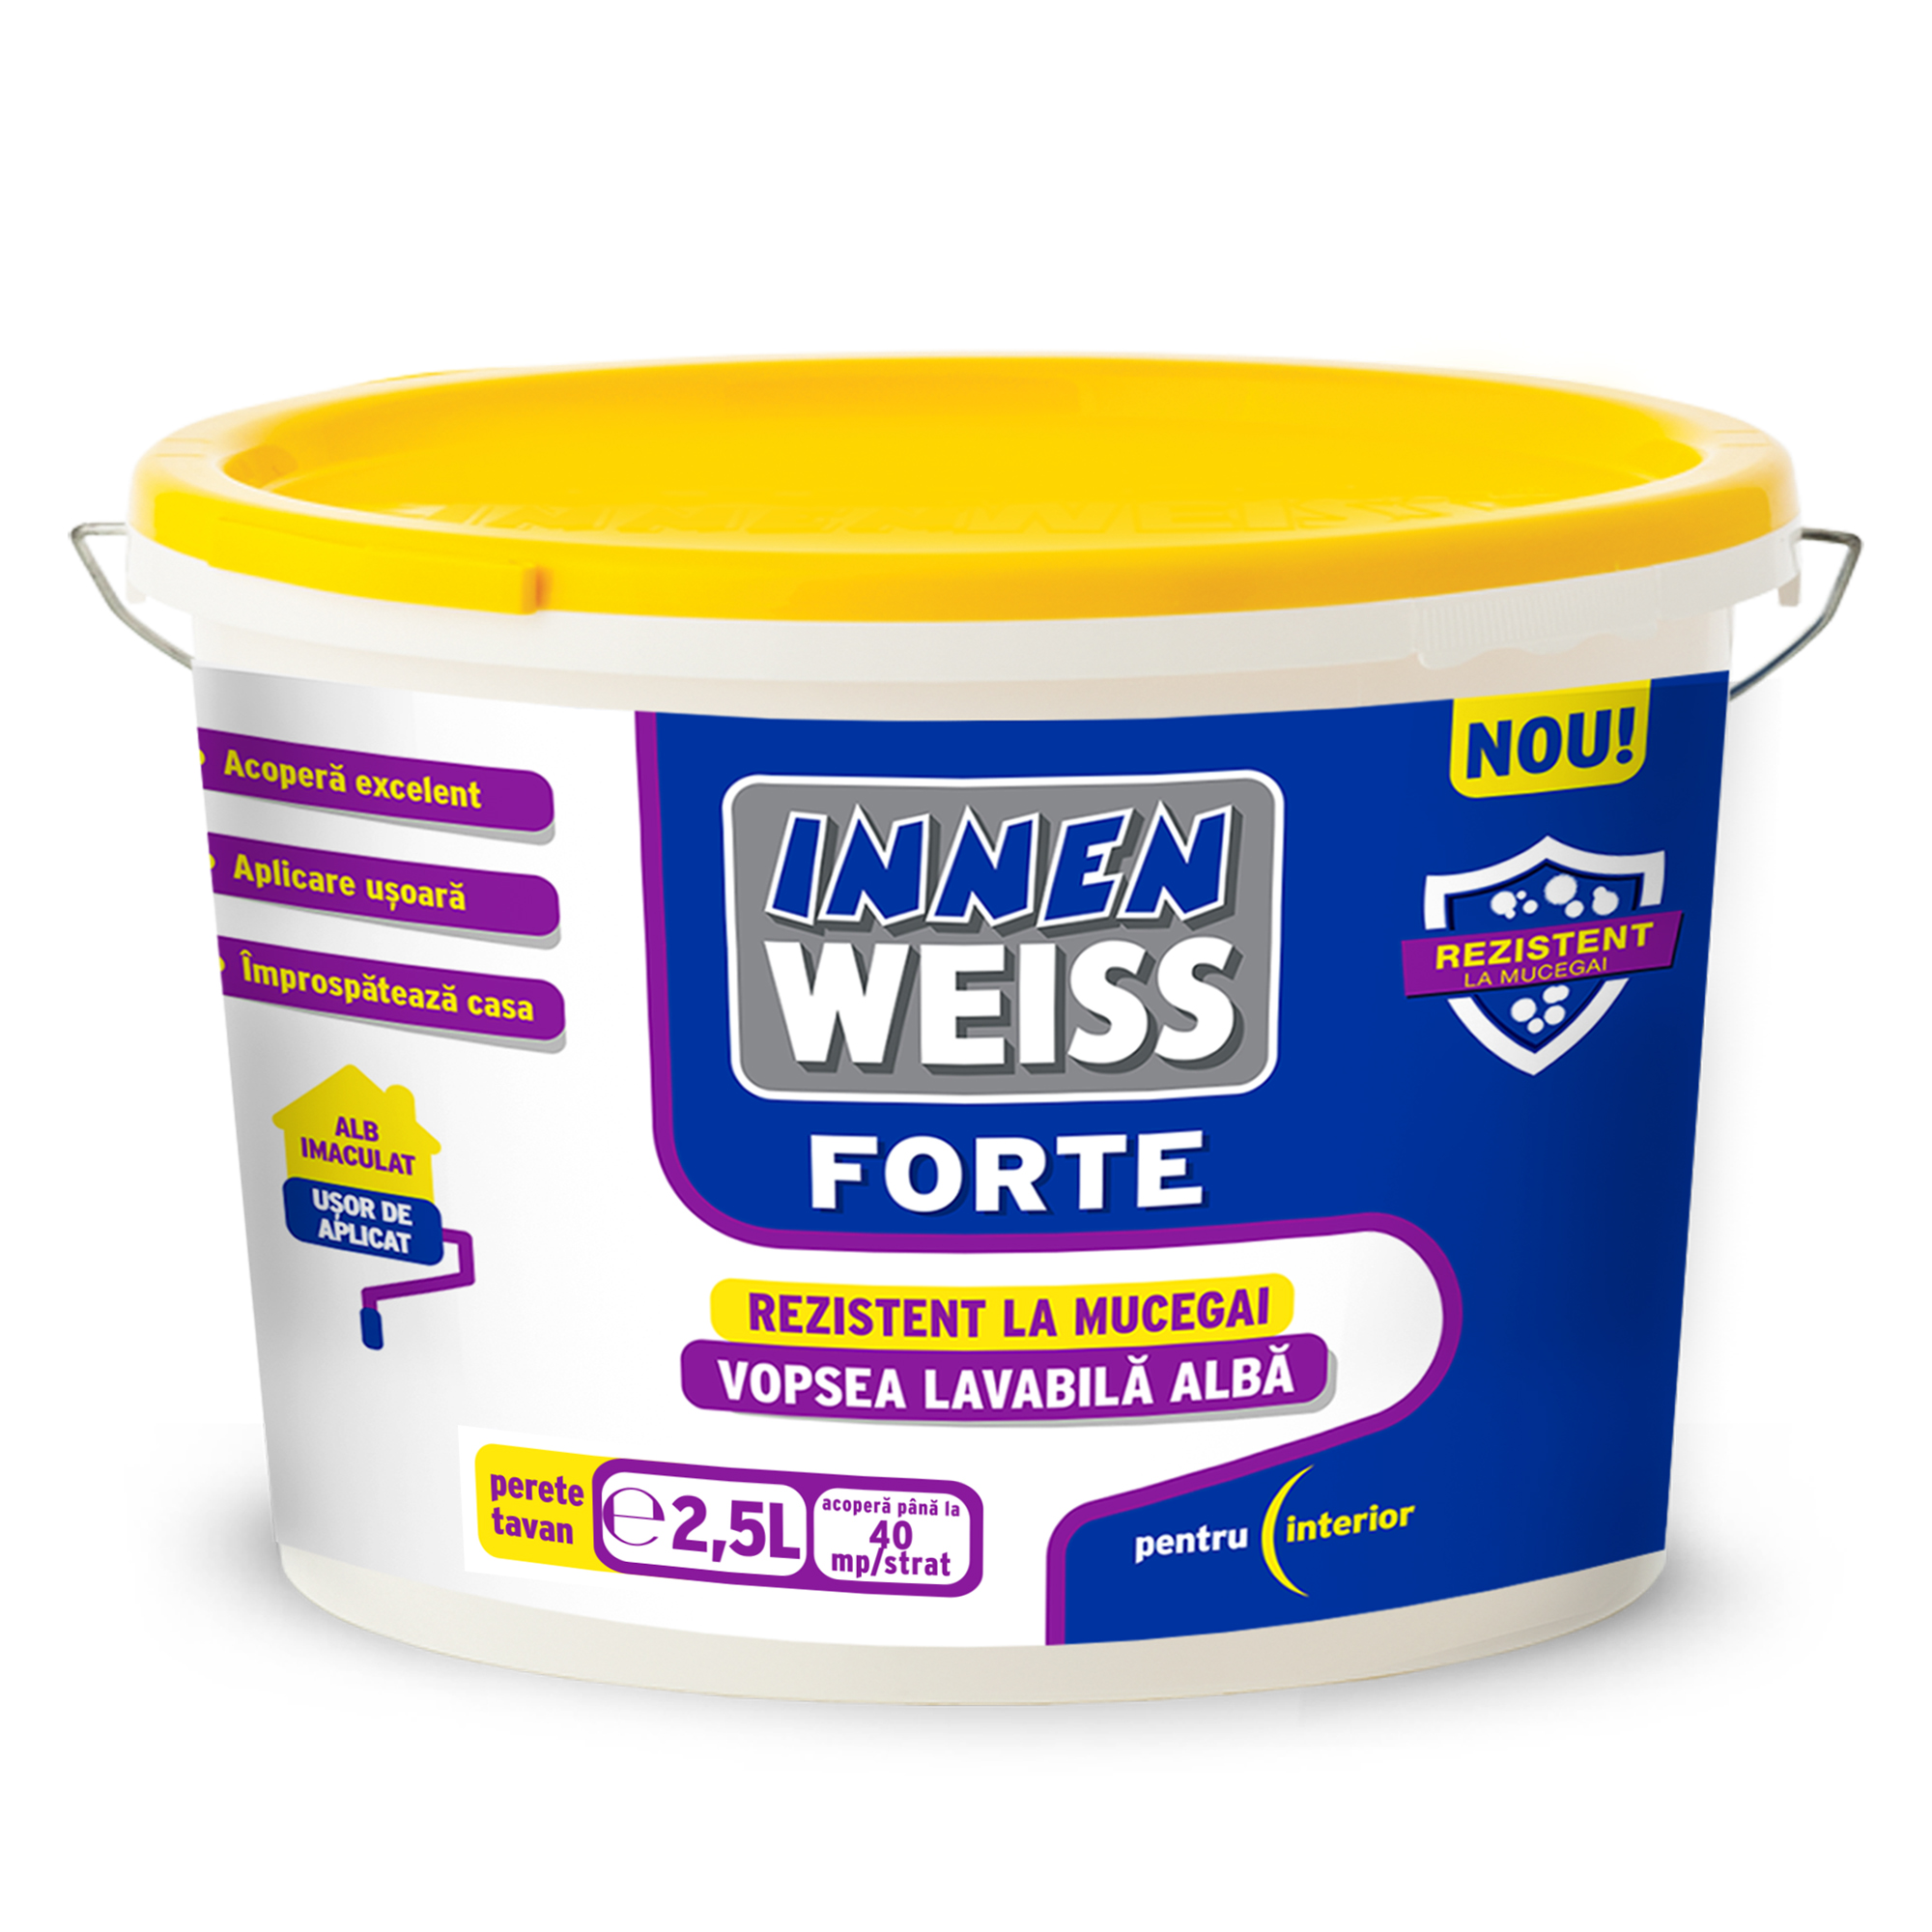 Vopsea lavabila alba pentru interior Innenweiss Forte, 2.5 l 2.5